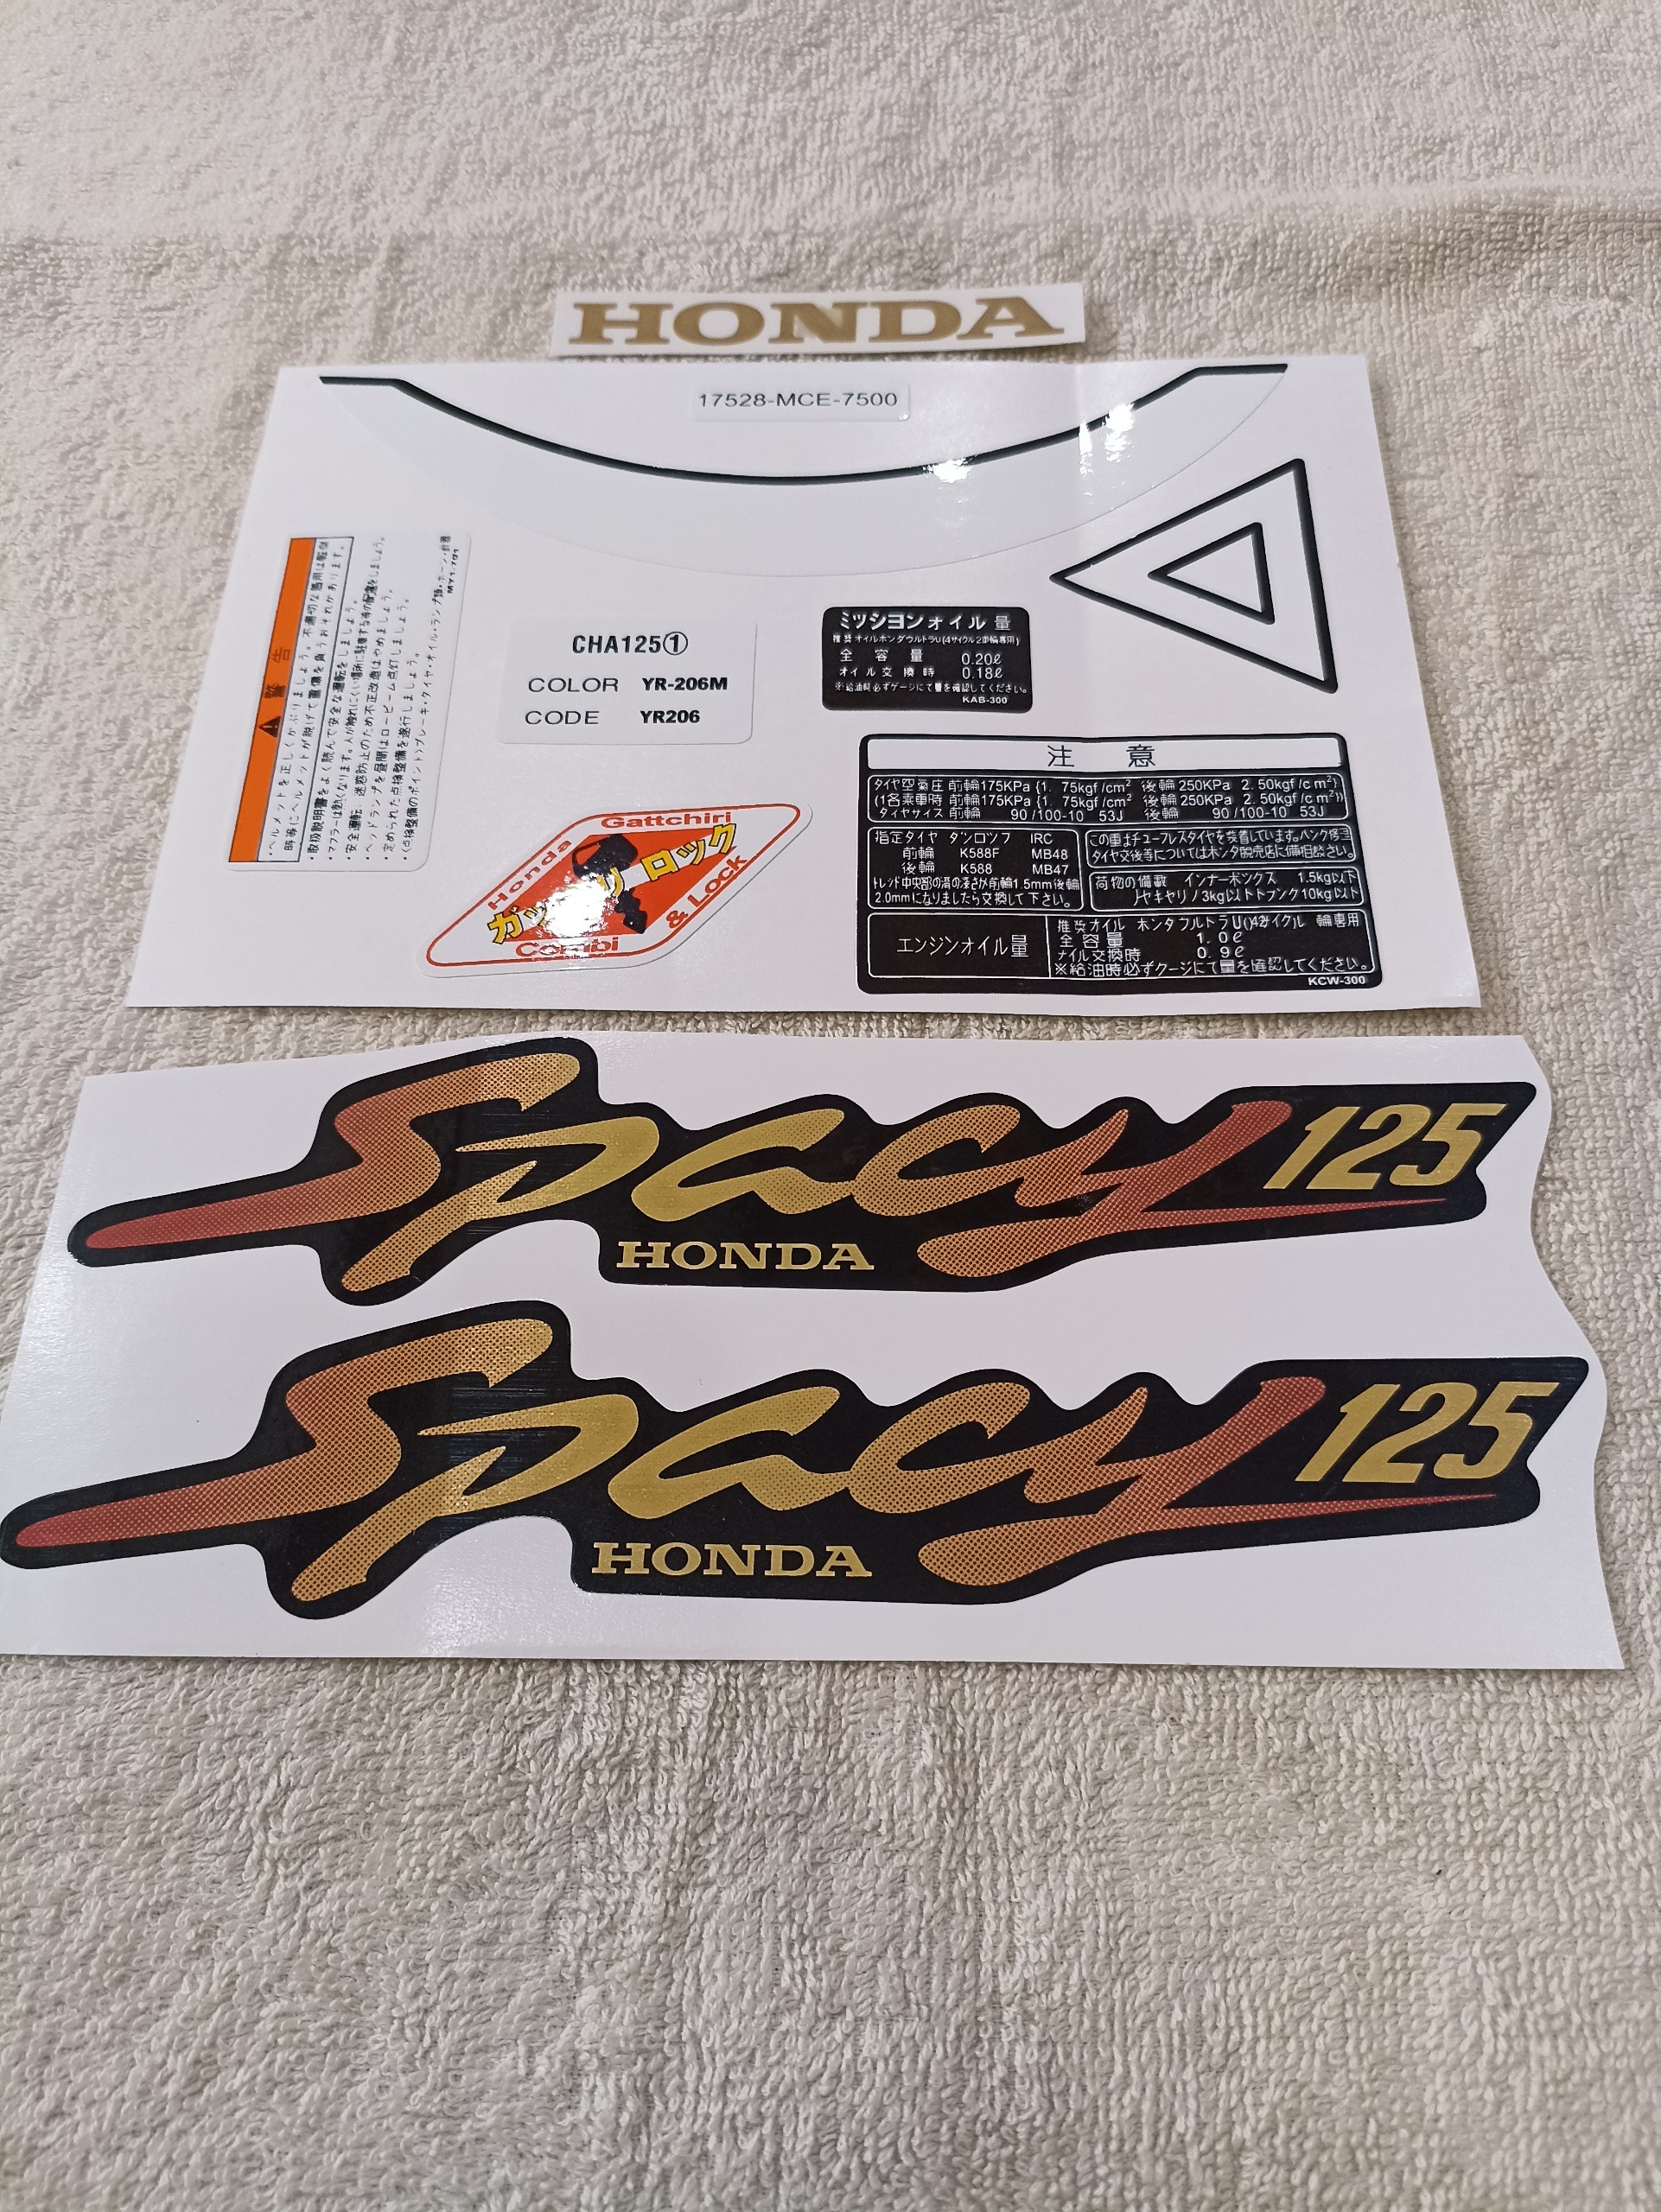 Bộ tem decal dán xe máy Honda spacy 125 màu vàng kèm thông số zin thái siêu đẹp